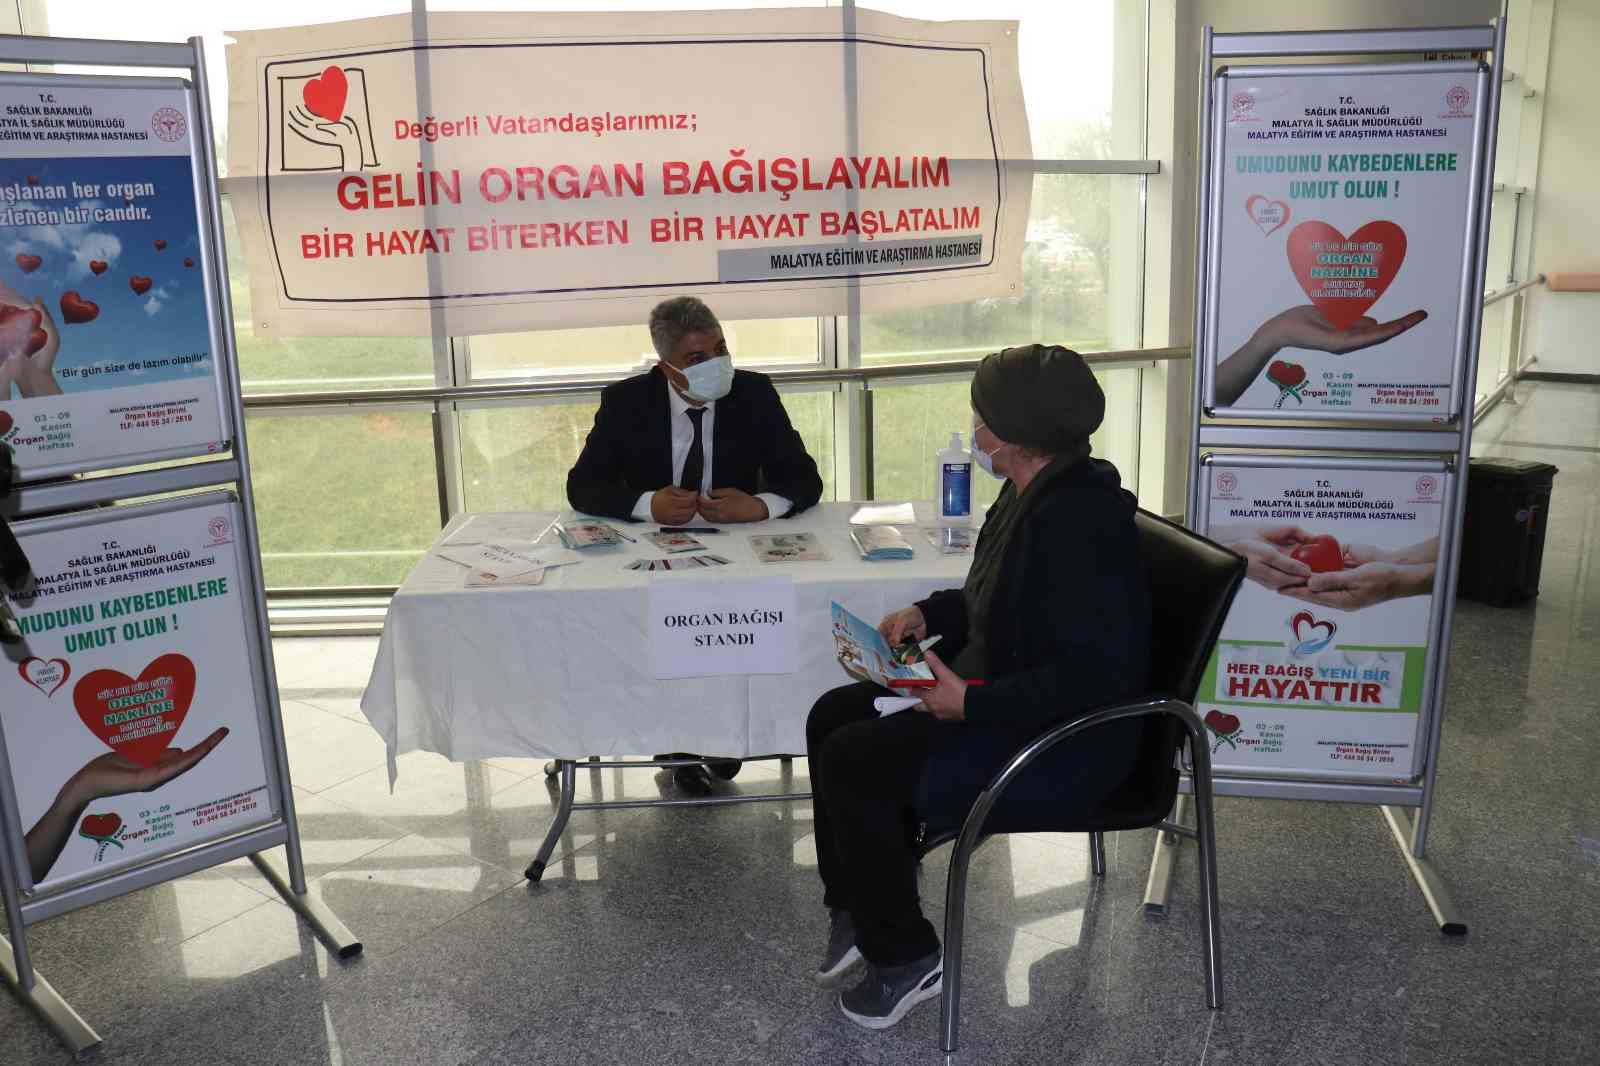 Eğitim ve Araştırma Hastanesi’nde organ bağışı standı kuruldu #malatya